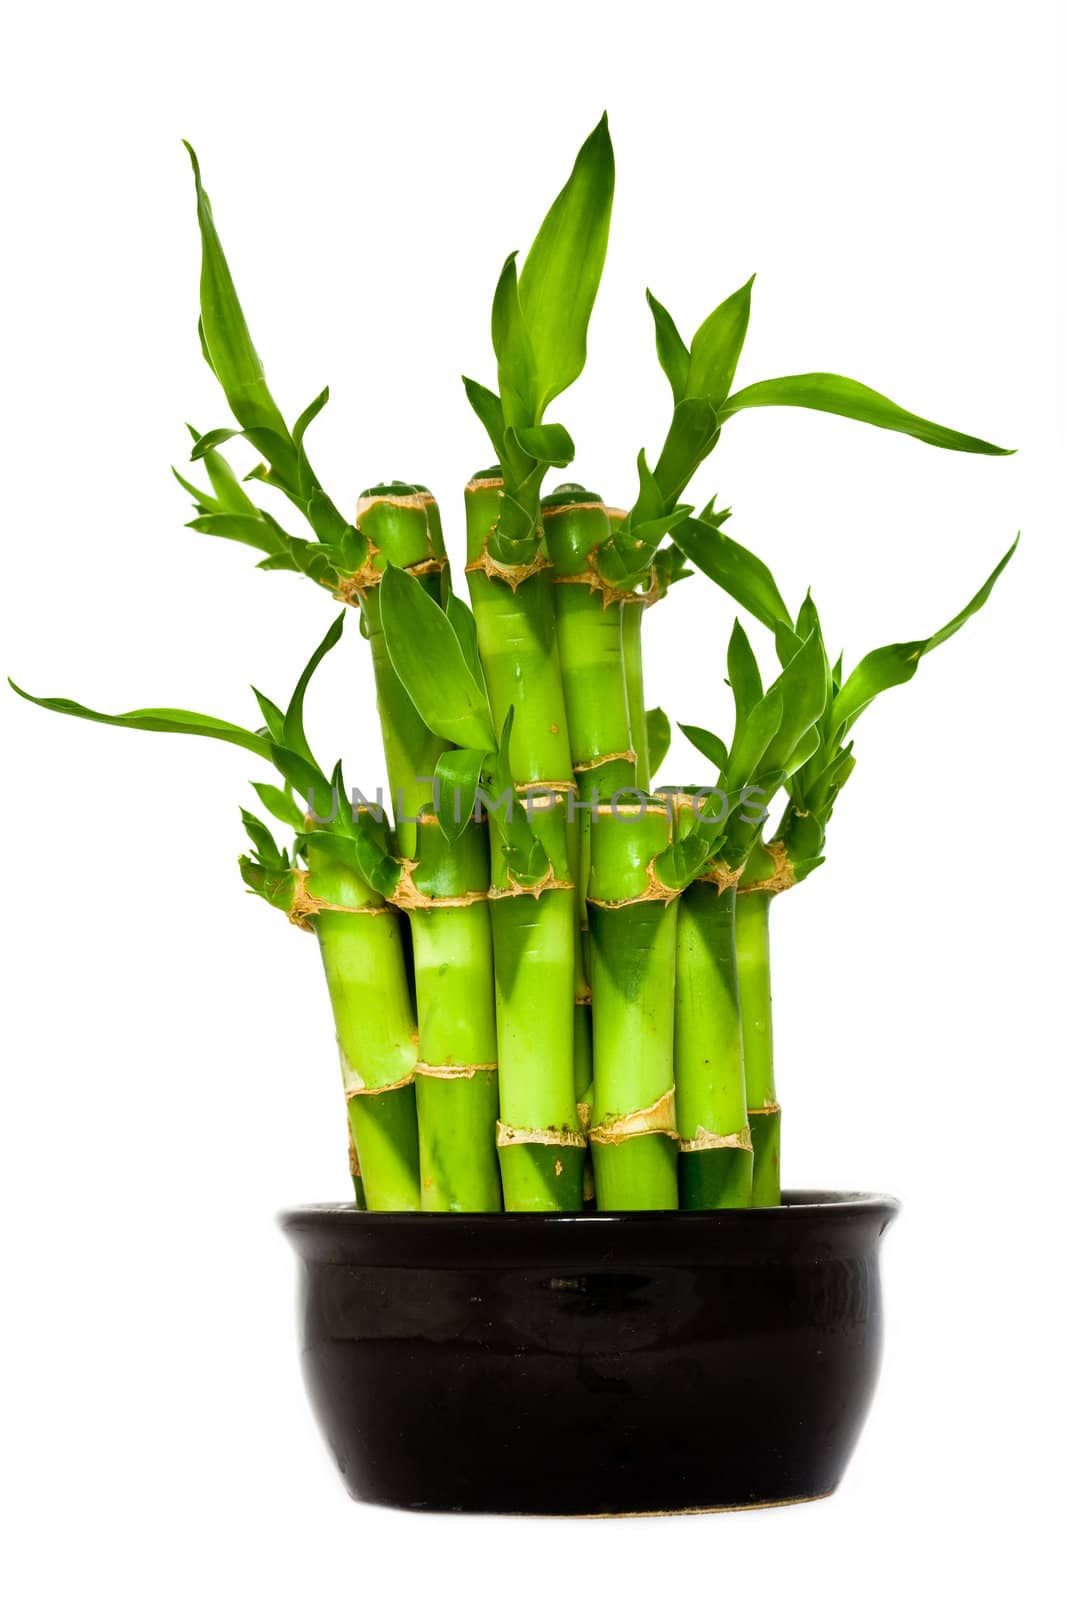 Green bamboo by velkol